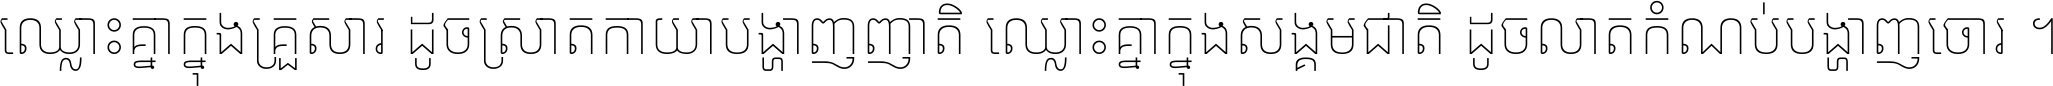 Noto Sans Khmer Thin